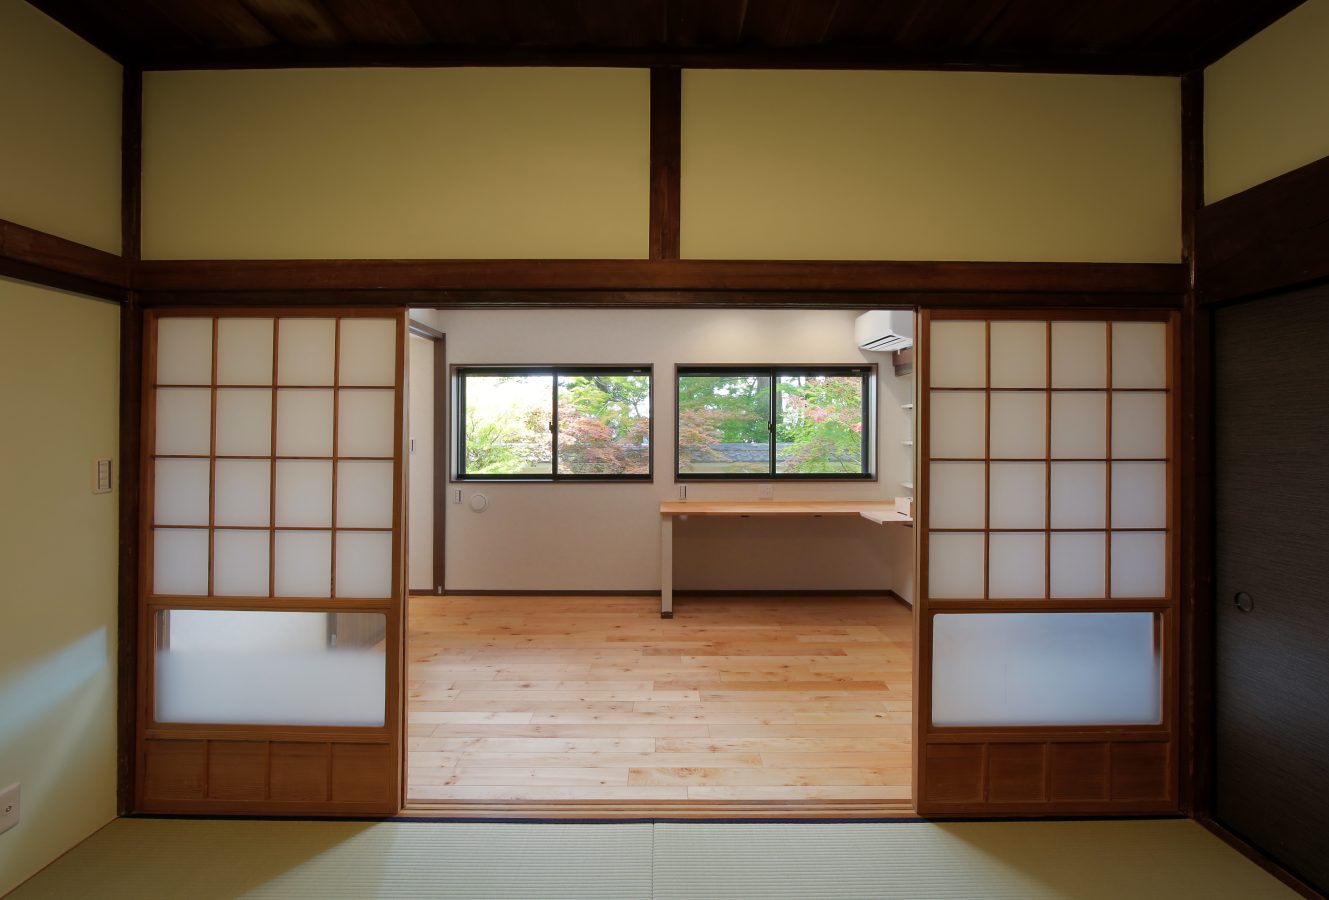 和室と隣接する洋室は、事務スペースとしても活用。窓から見える風景が四季を感じさせます。						